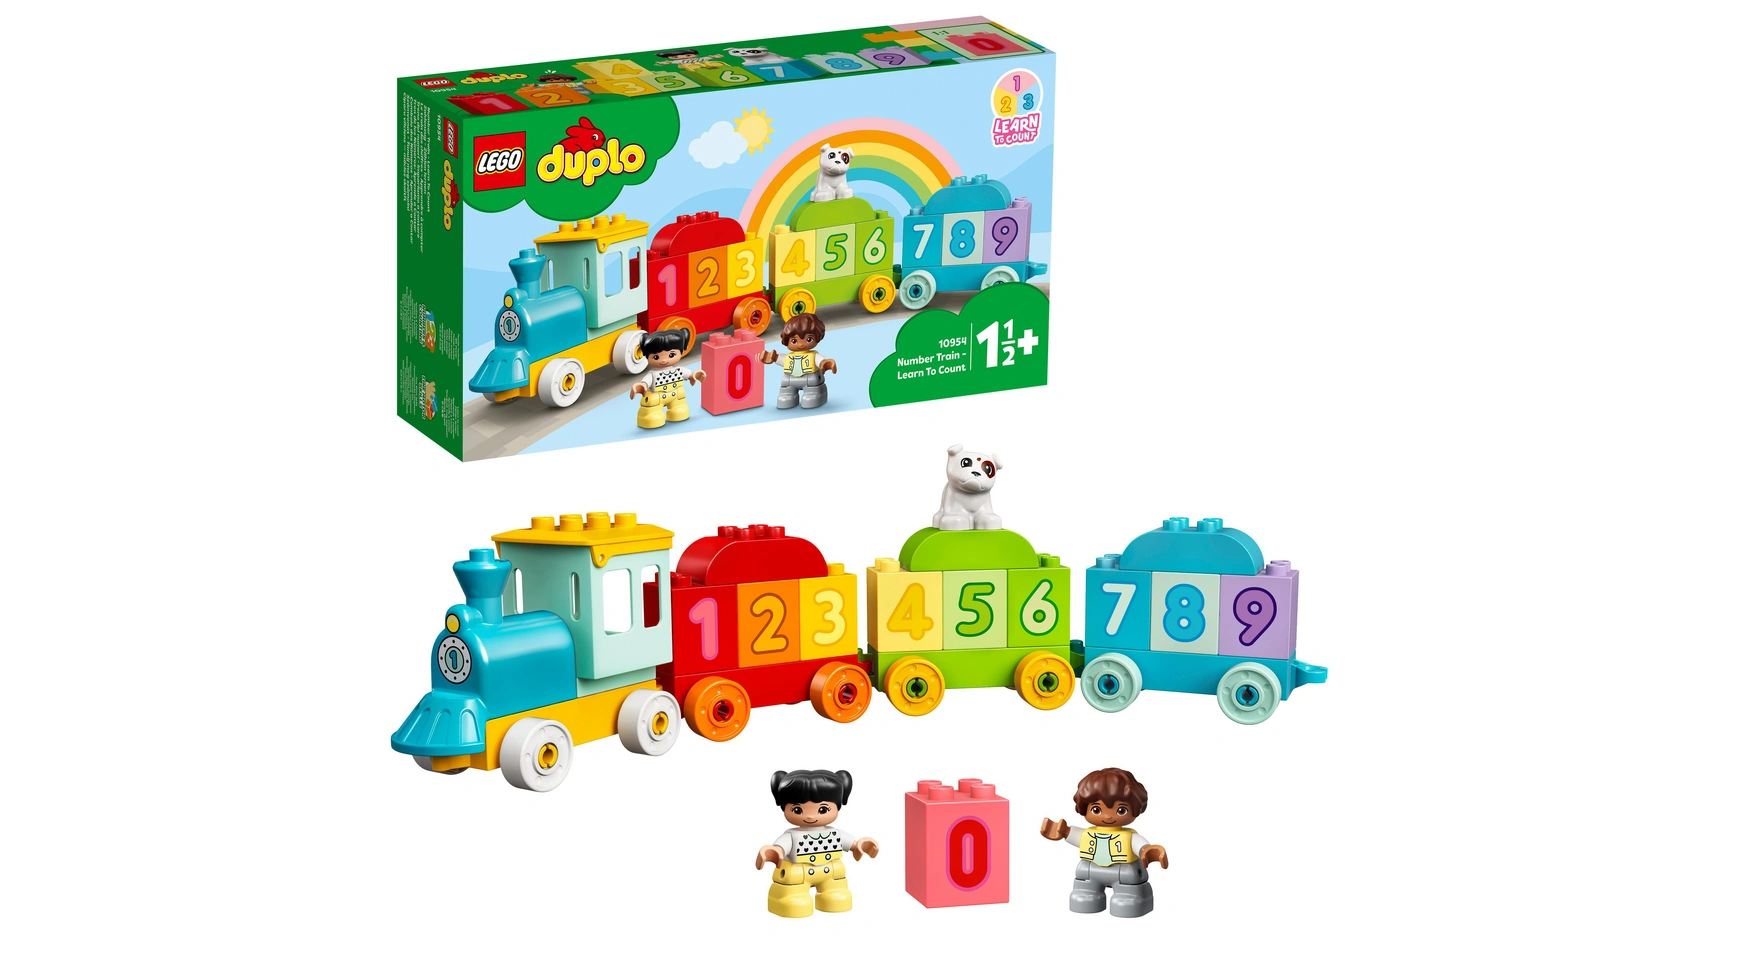 Lego DUPLO Цифровой поезд Учимся считать, детская игрушка, поезд конструктор lego duplo train tracks 10882 23 детали